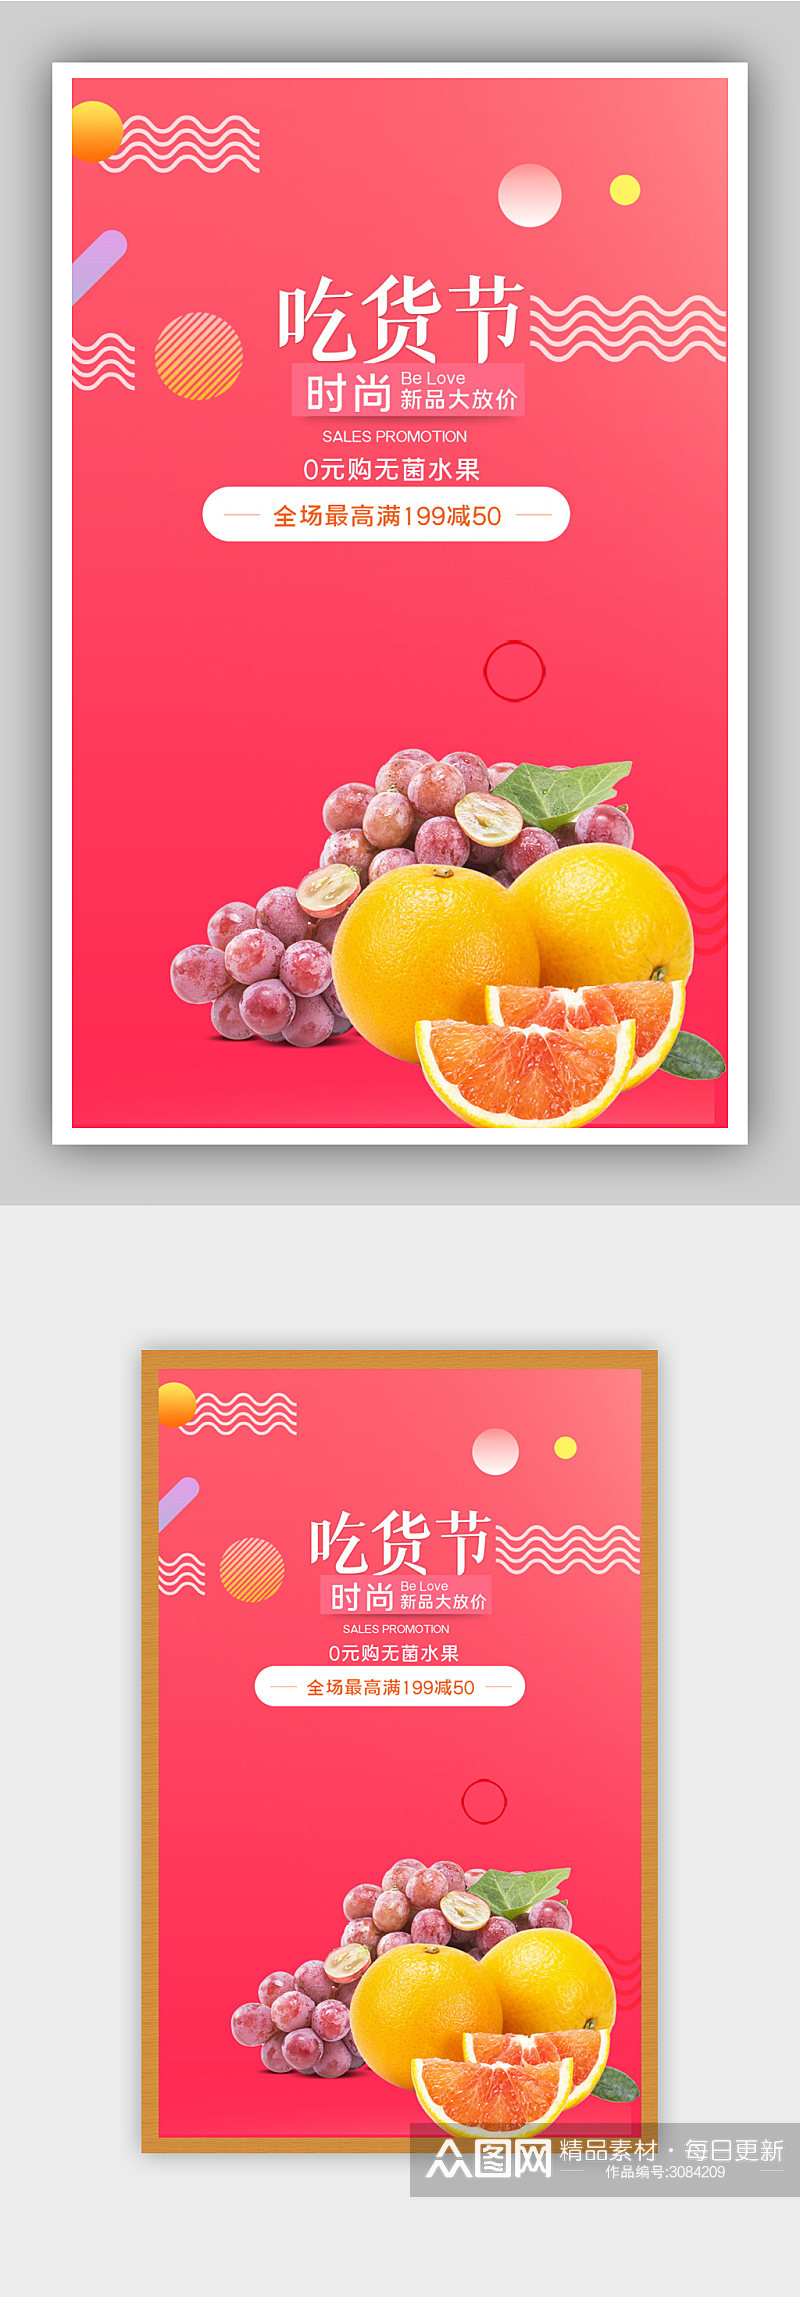 吃货节水果生鲜电商背景海报素材